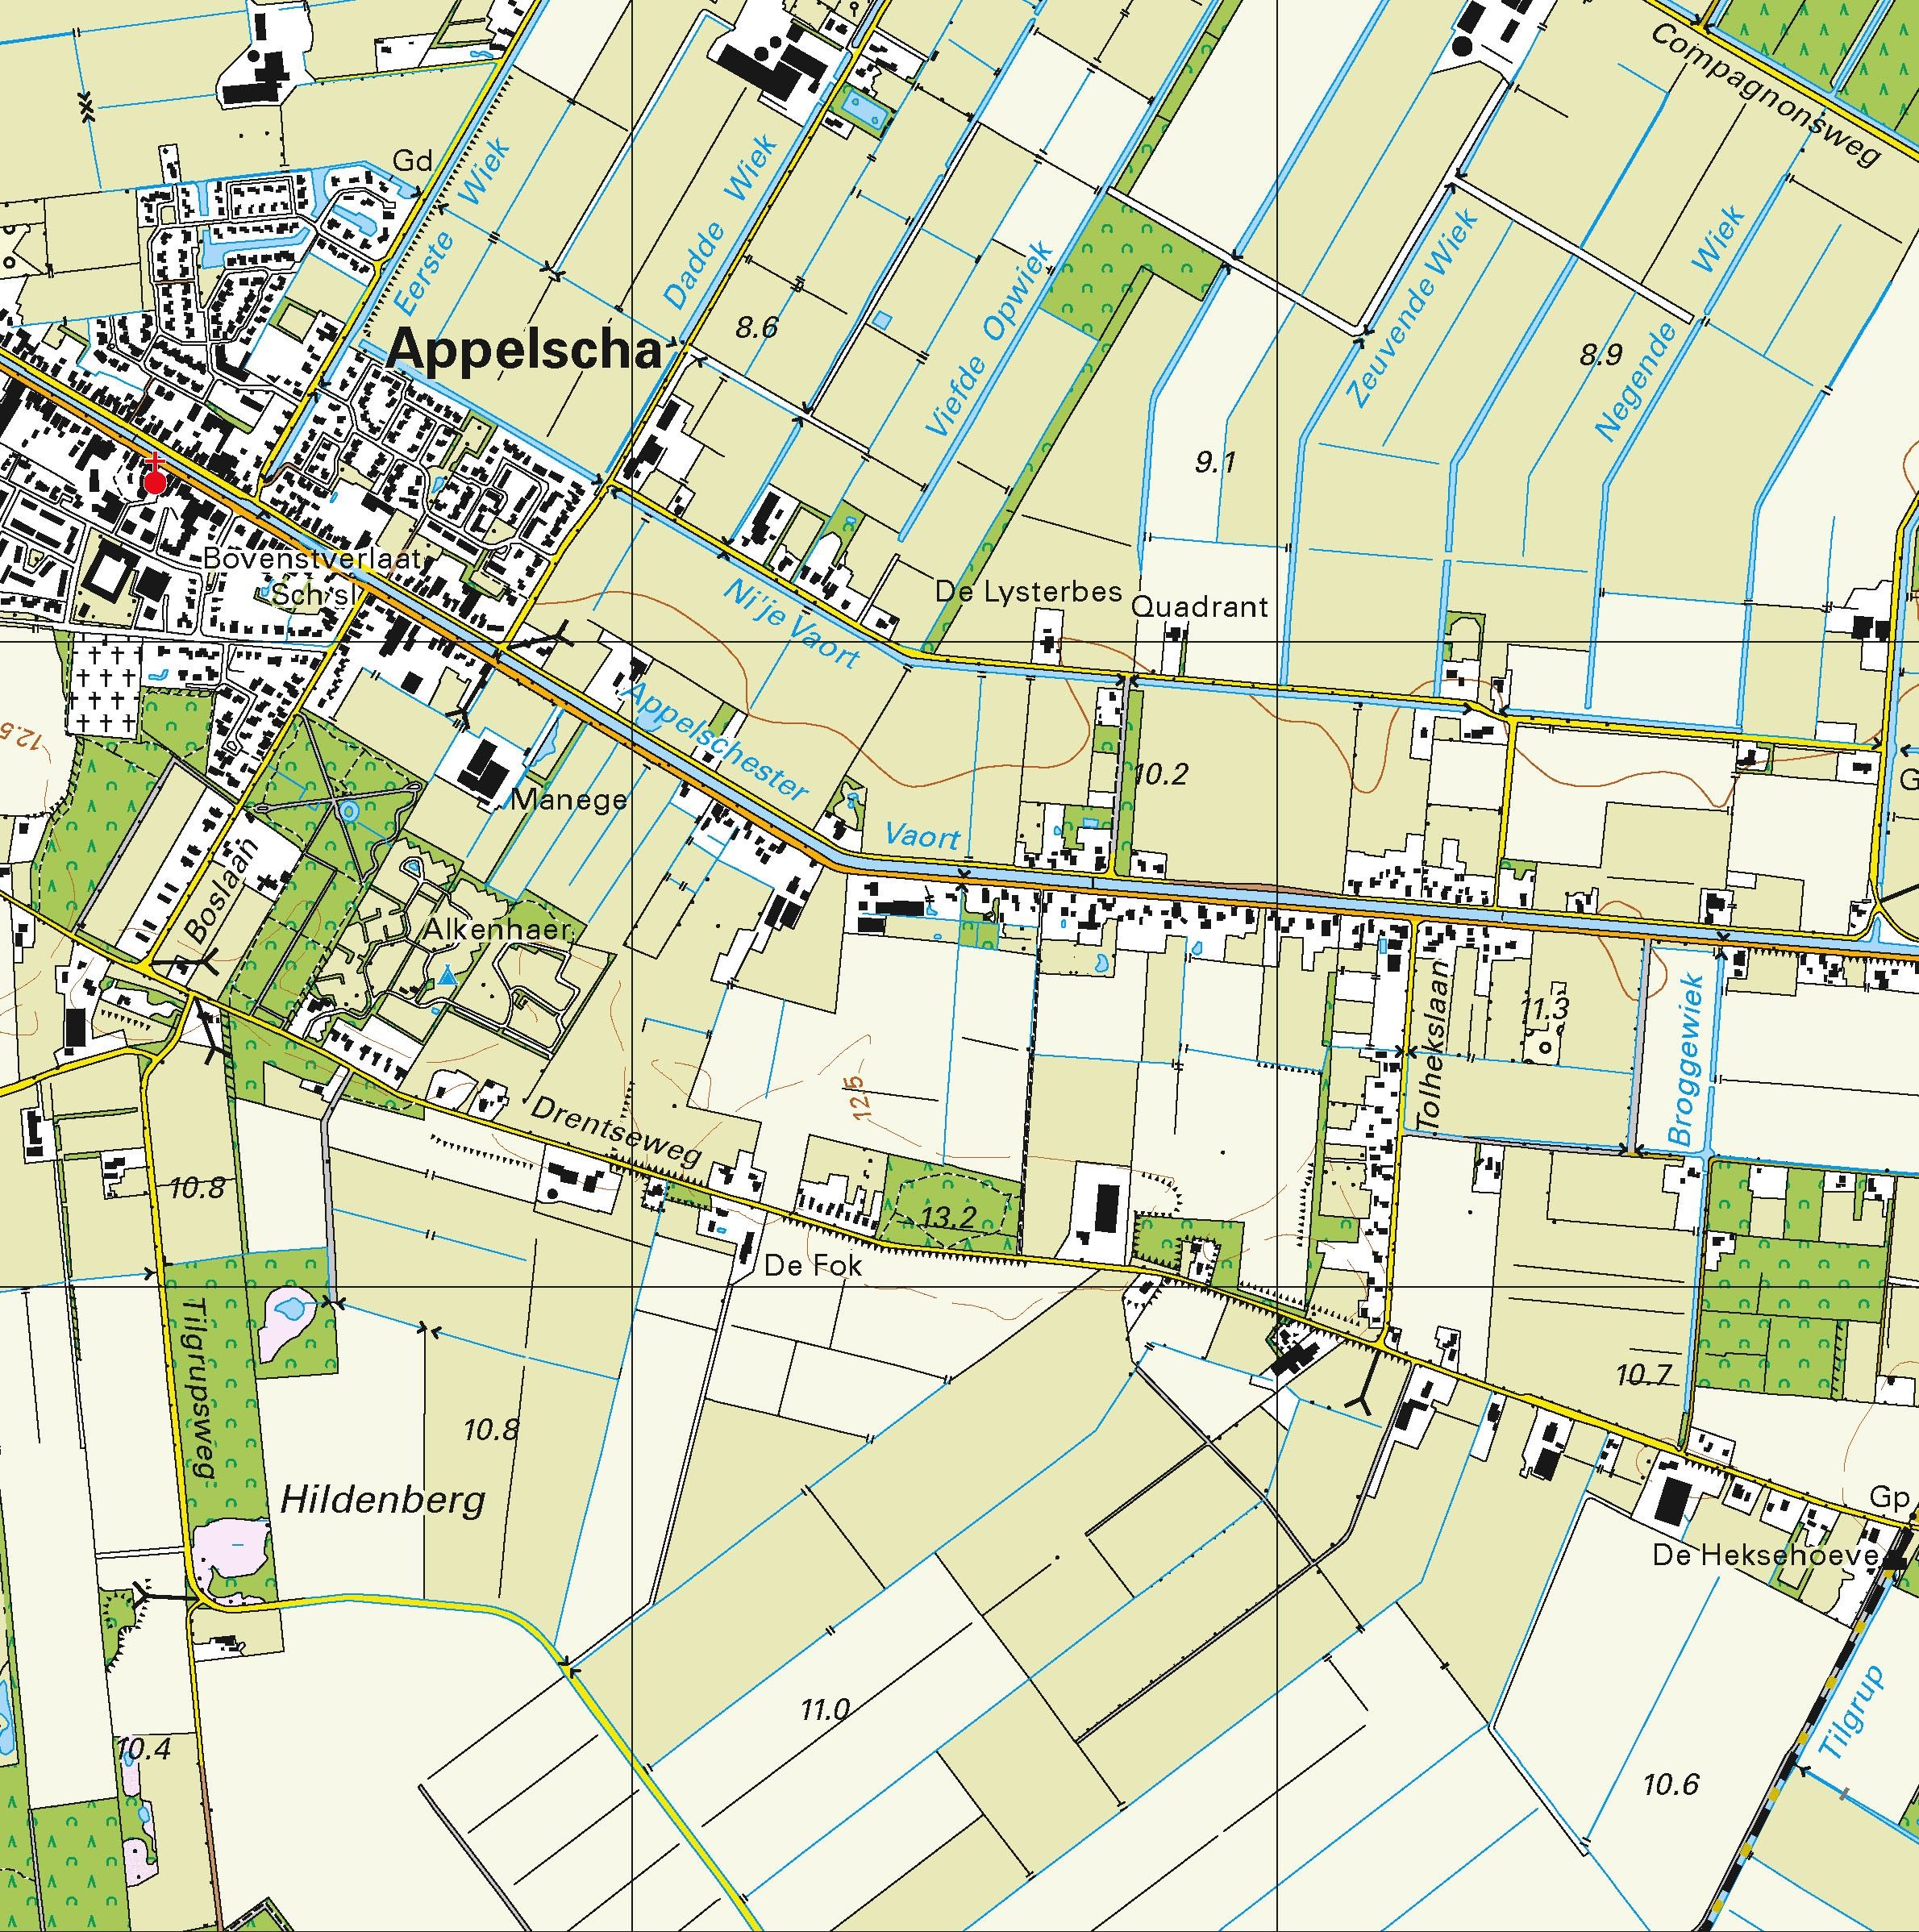 Topografische kaart schaal 1:25.000 (Oosterwolde, Appelscha, Smilde, Dwingeloo, Diever)